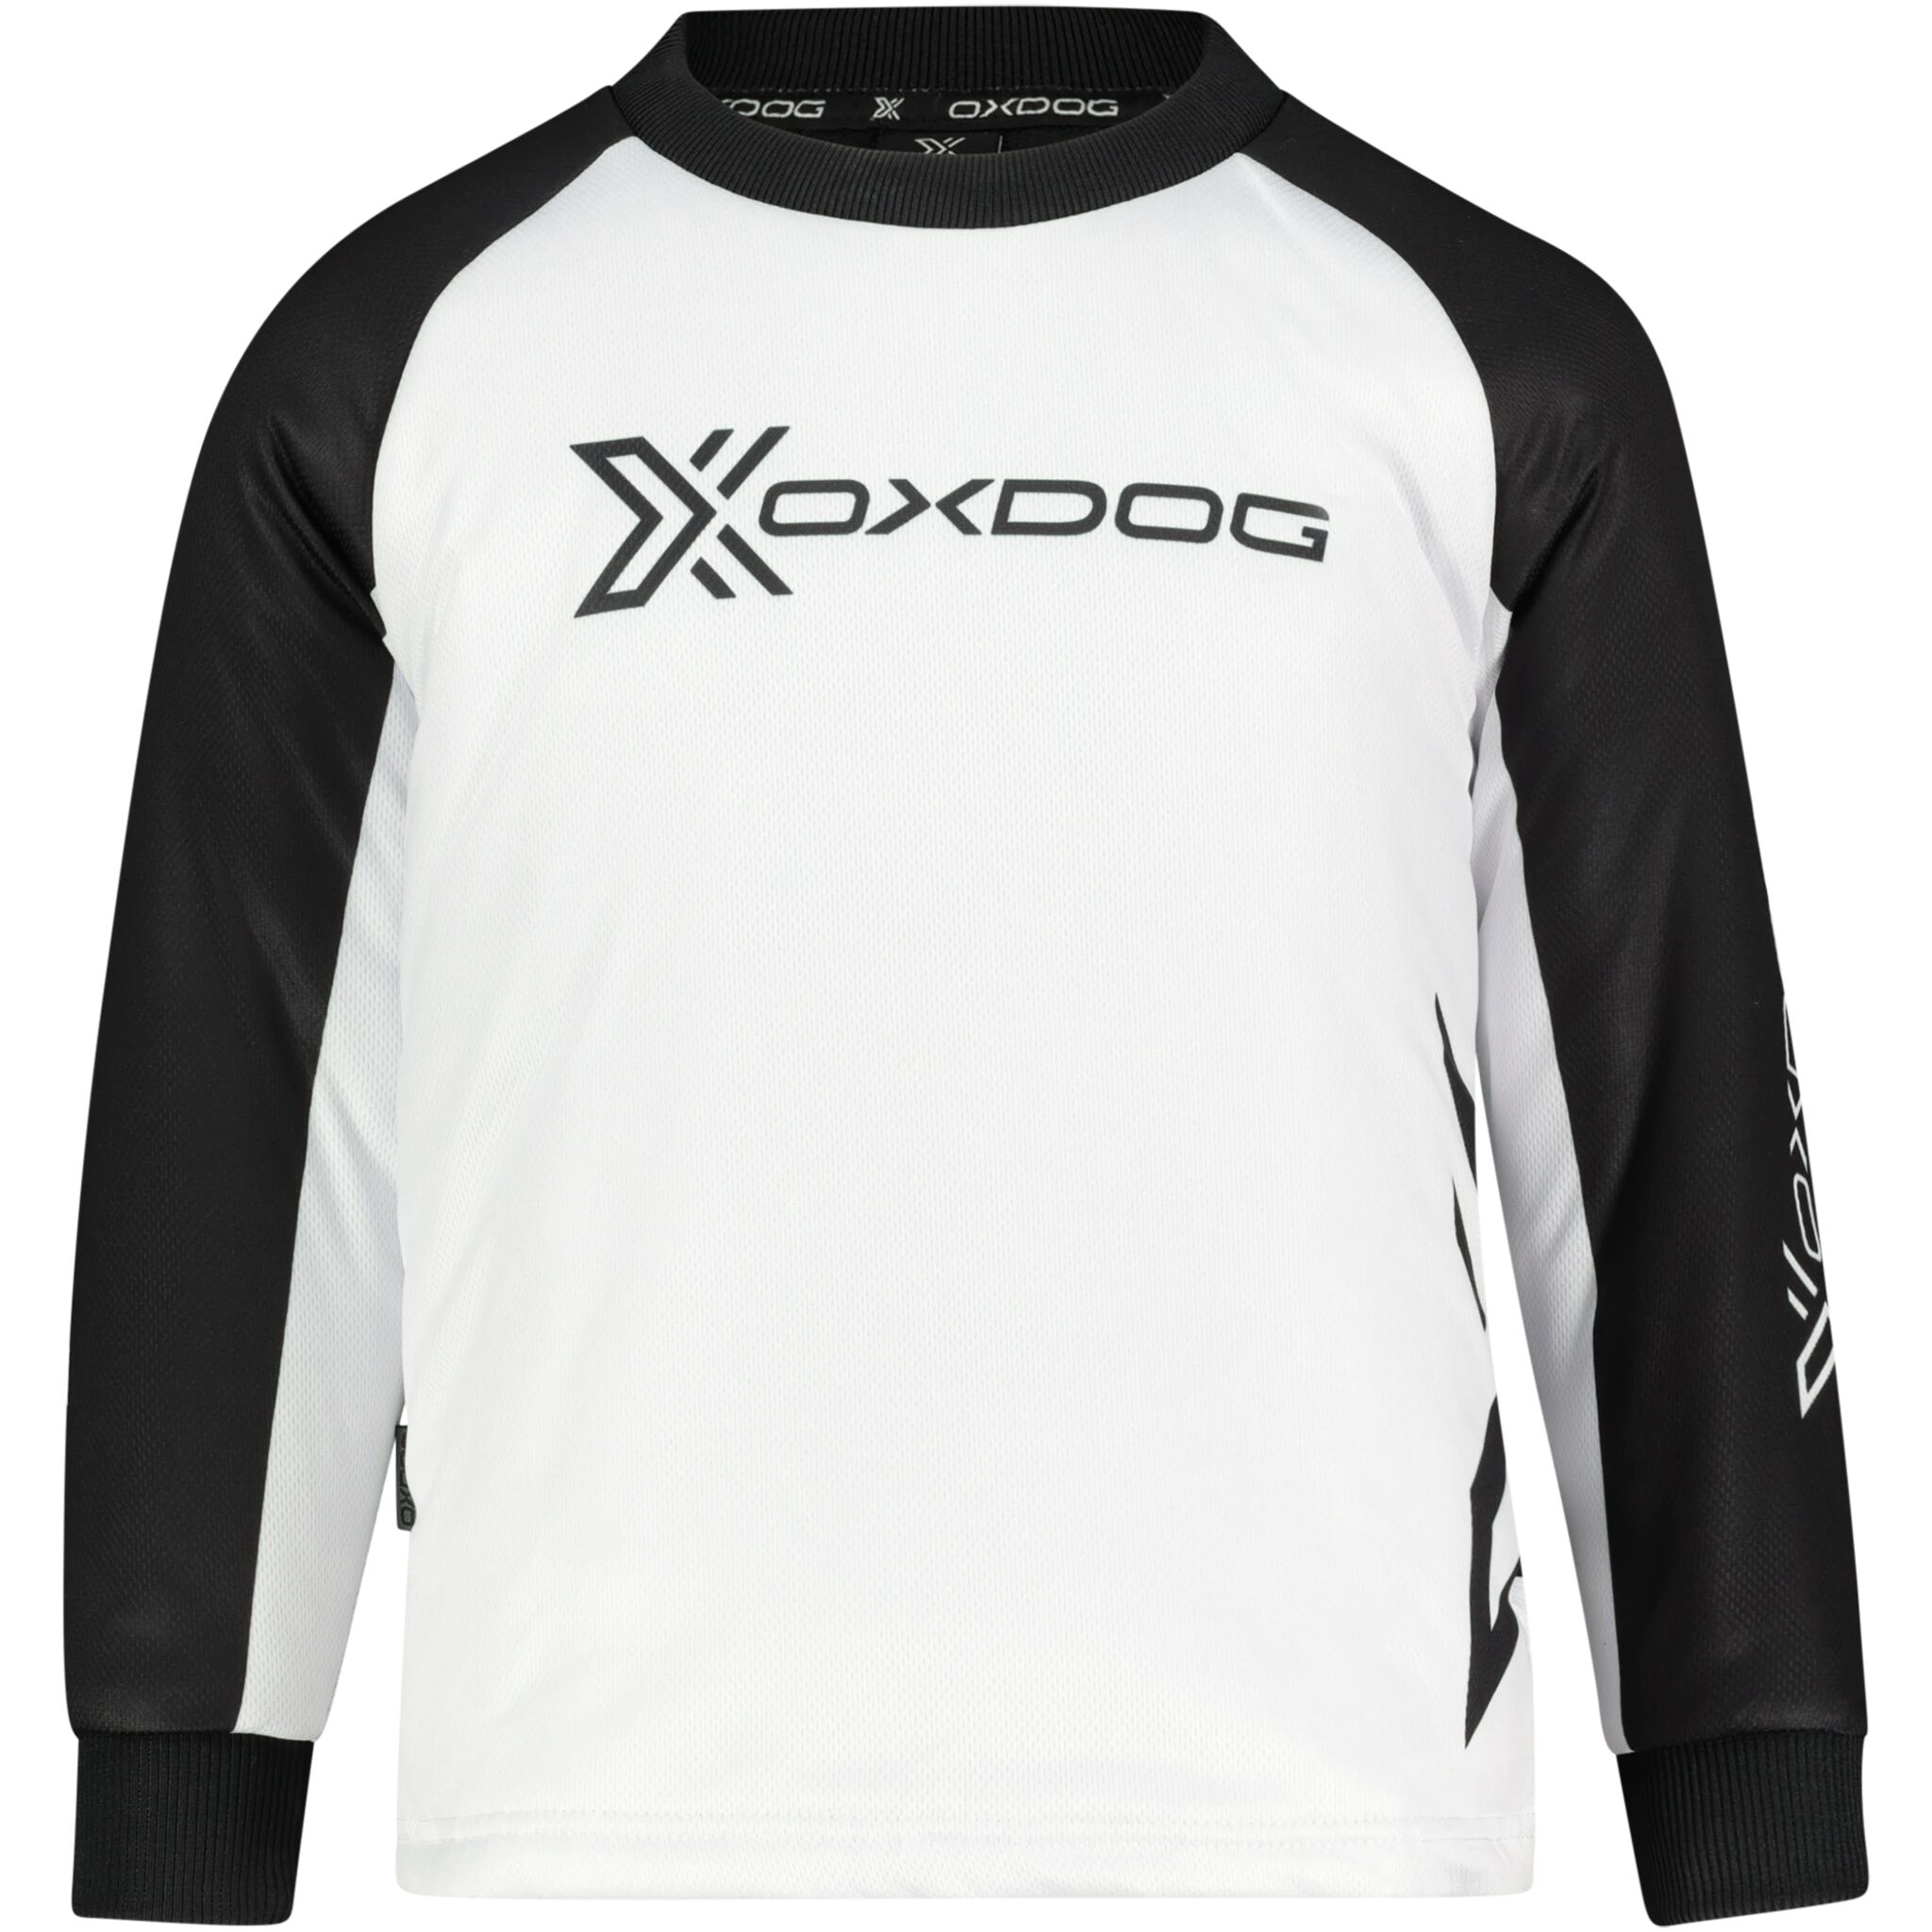 Oxdog Xguard Goalie Shirt, treningstrøye junior 110/120 BLACK/WHITE